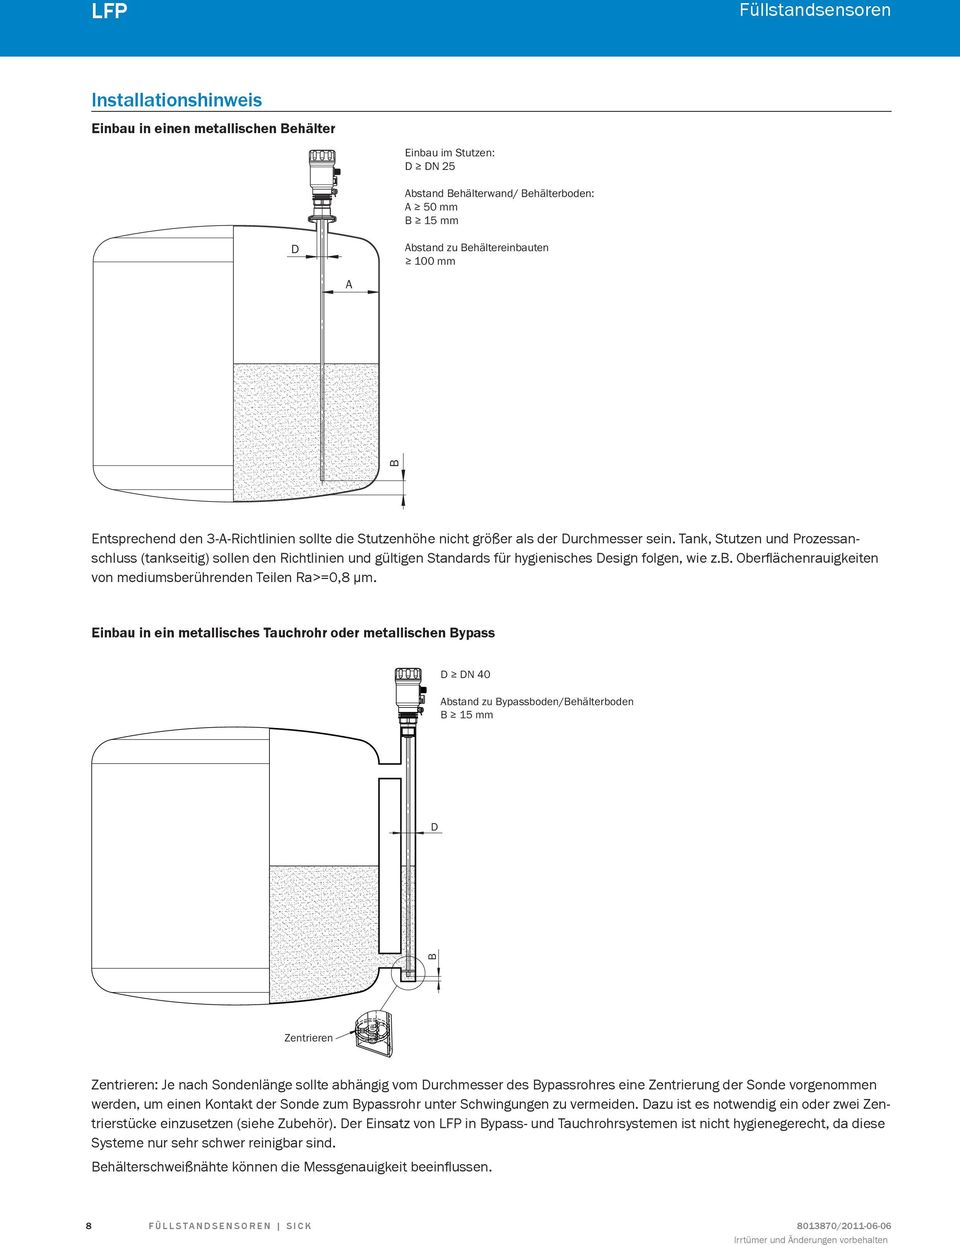 Tank, Stutzen und Prozessanschluss (tankseitig) sollen den Richtlinien und gültigen Standards für hygienisches Design folgen, wie z.b. Oberflächenrauigkeiten von mediumsberührenden Teilen Ra>=0,8 μm.